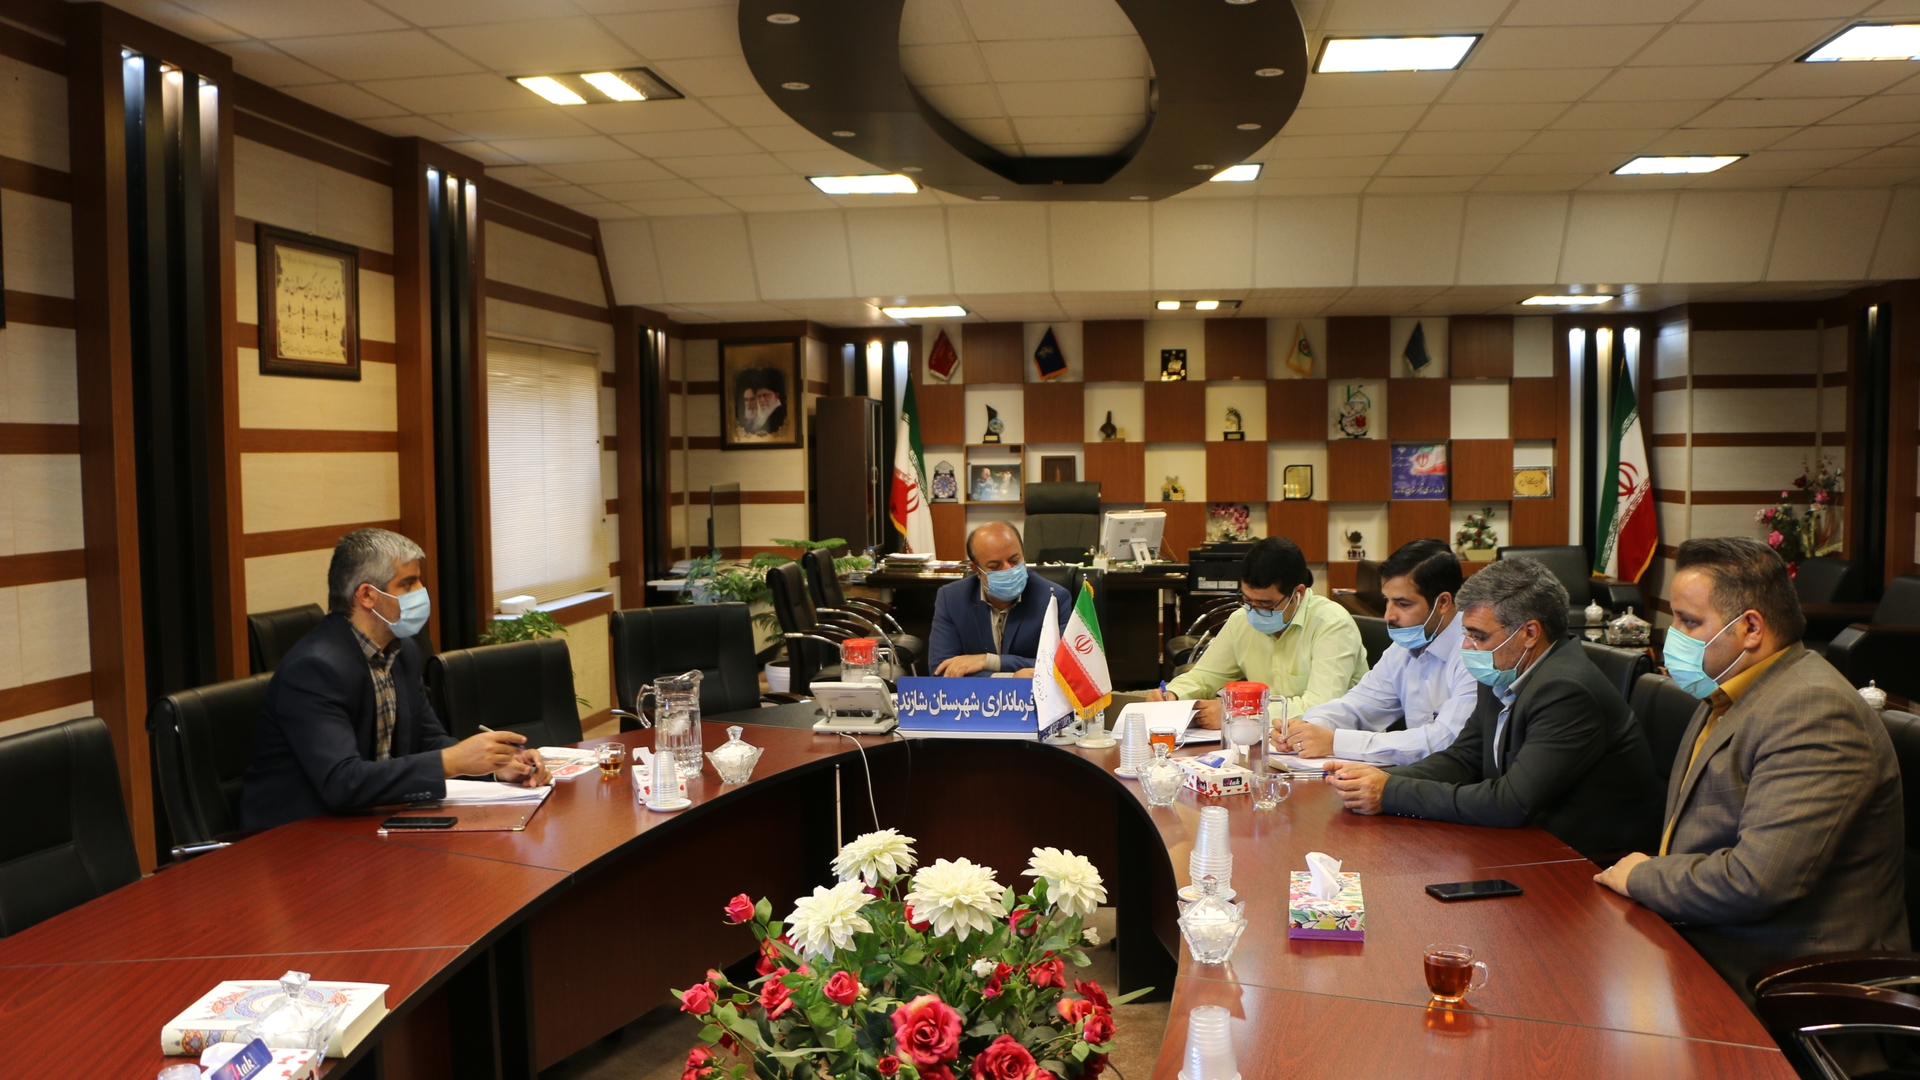 جلسه هیأت تطبیق بررسی مصوبات شوراهای اسلامی شهرهای شهرستان شازند برگزارشد.